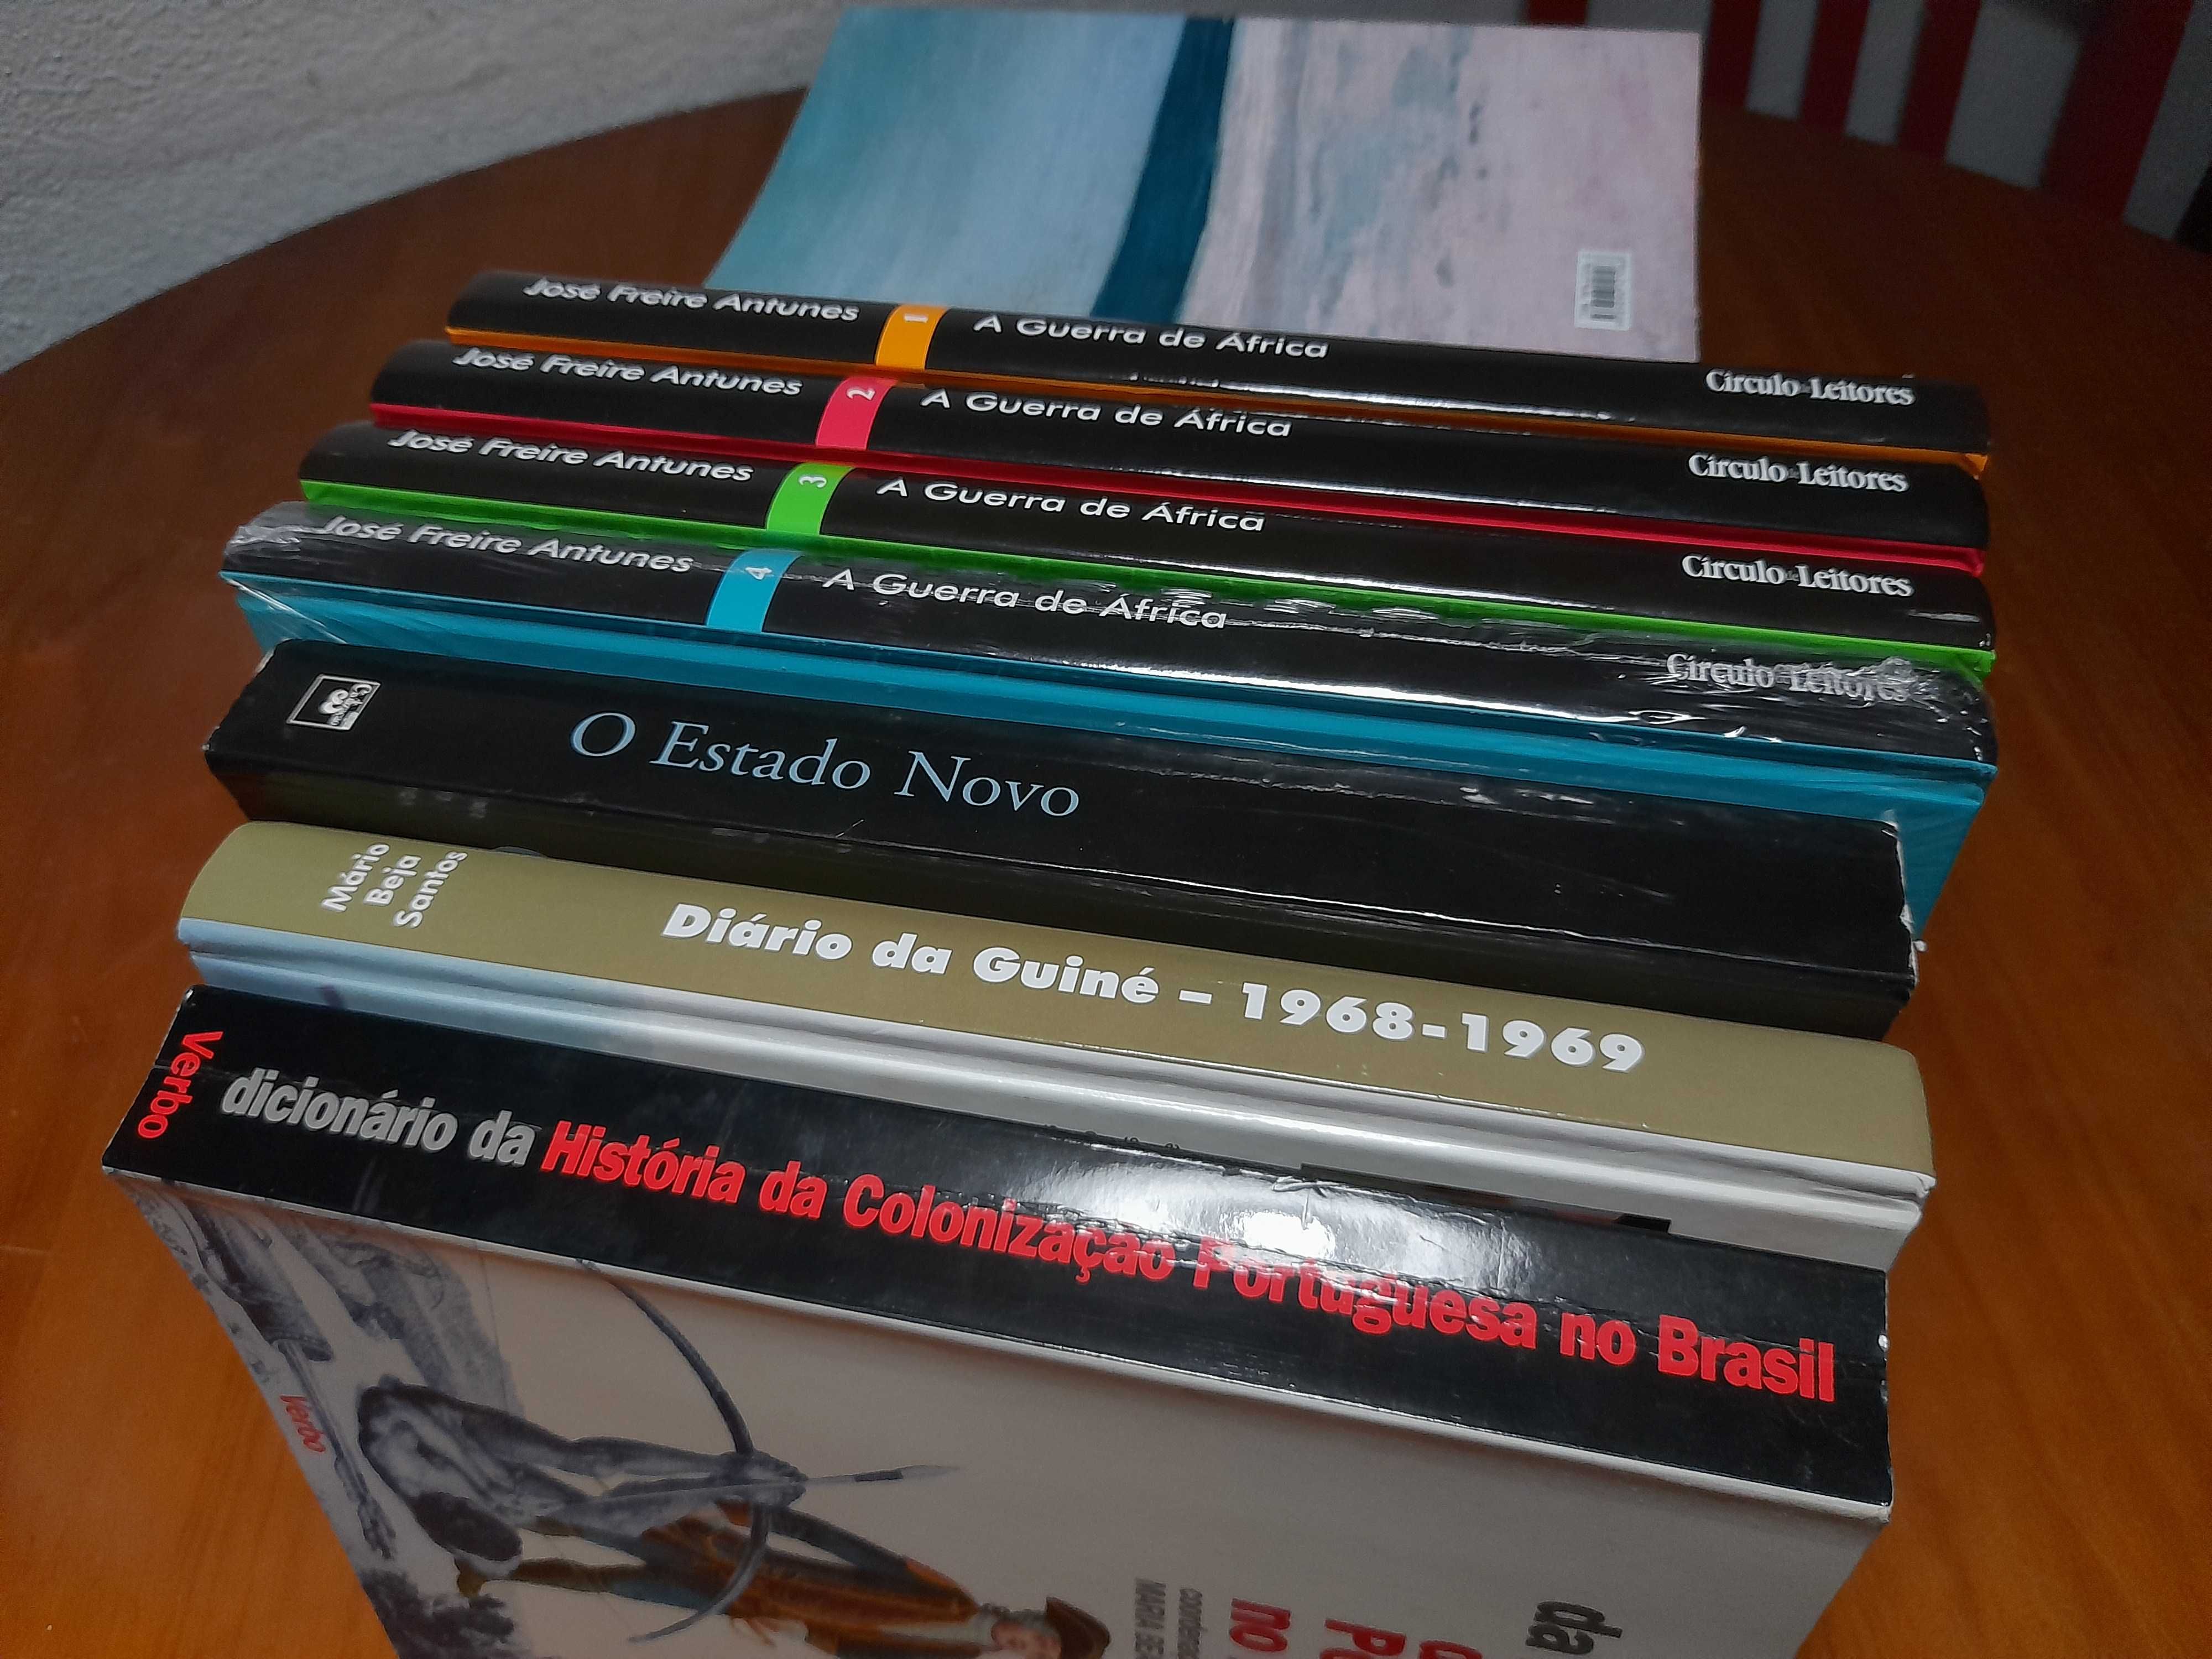 Livros de história de portugal, da guerra colonial e brasil.